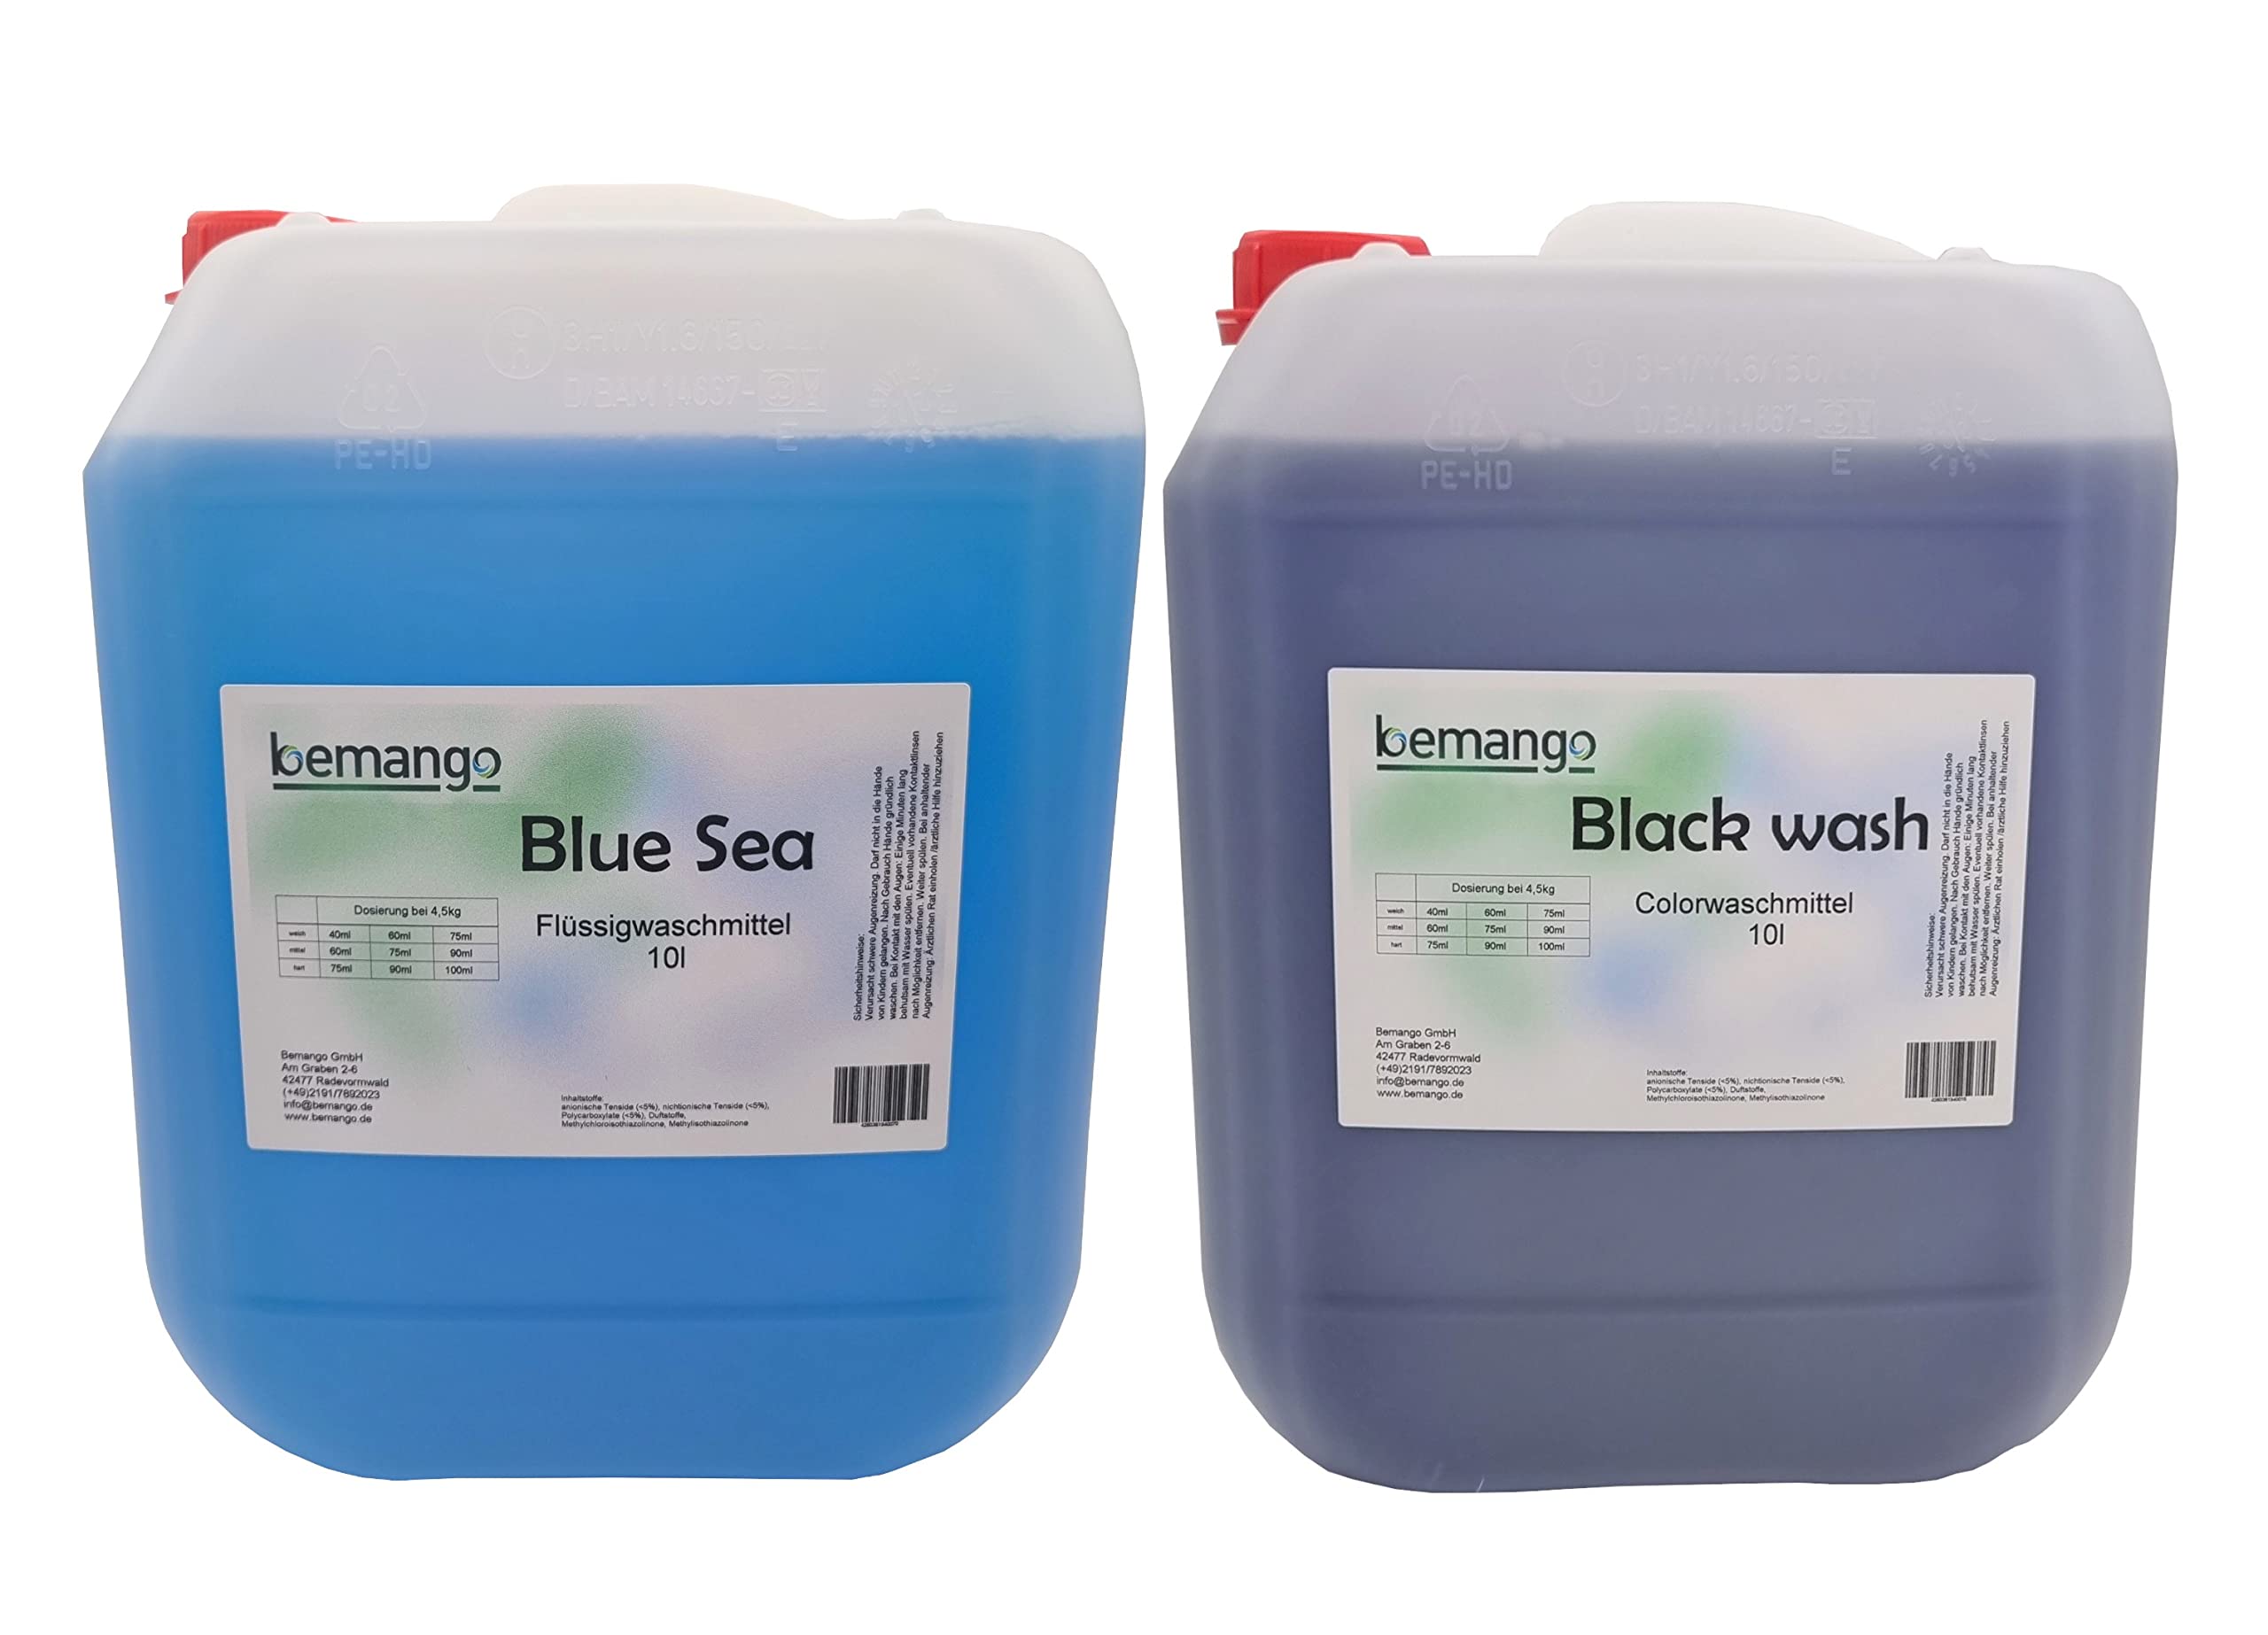 Flüssigwaschmittel 10l blue und 10l Colorwaschmittel blackwash für dunkle Wäsche